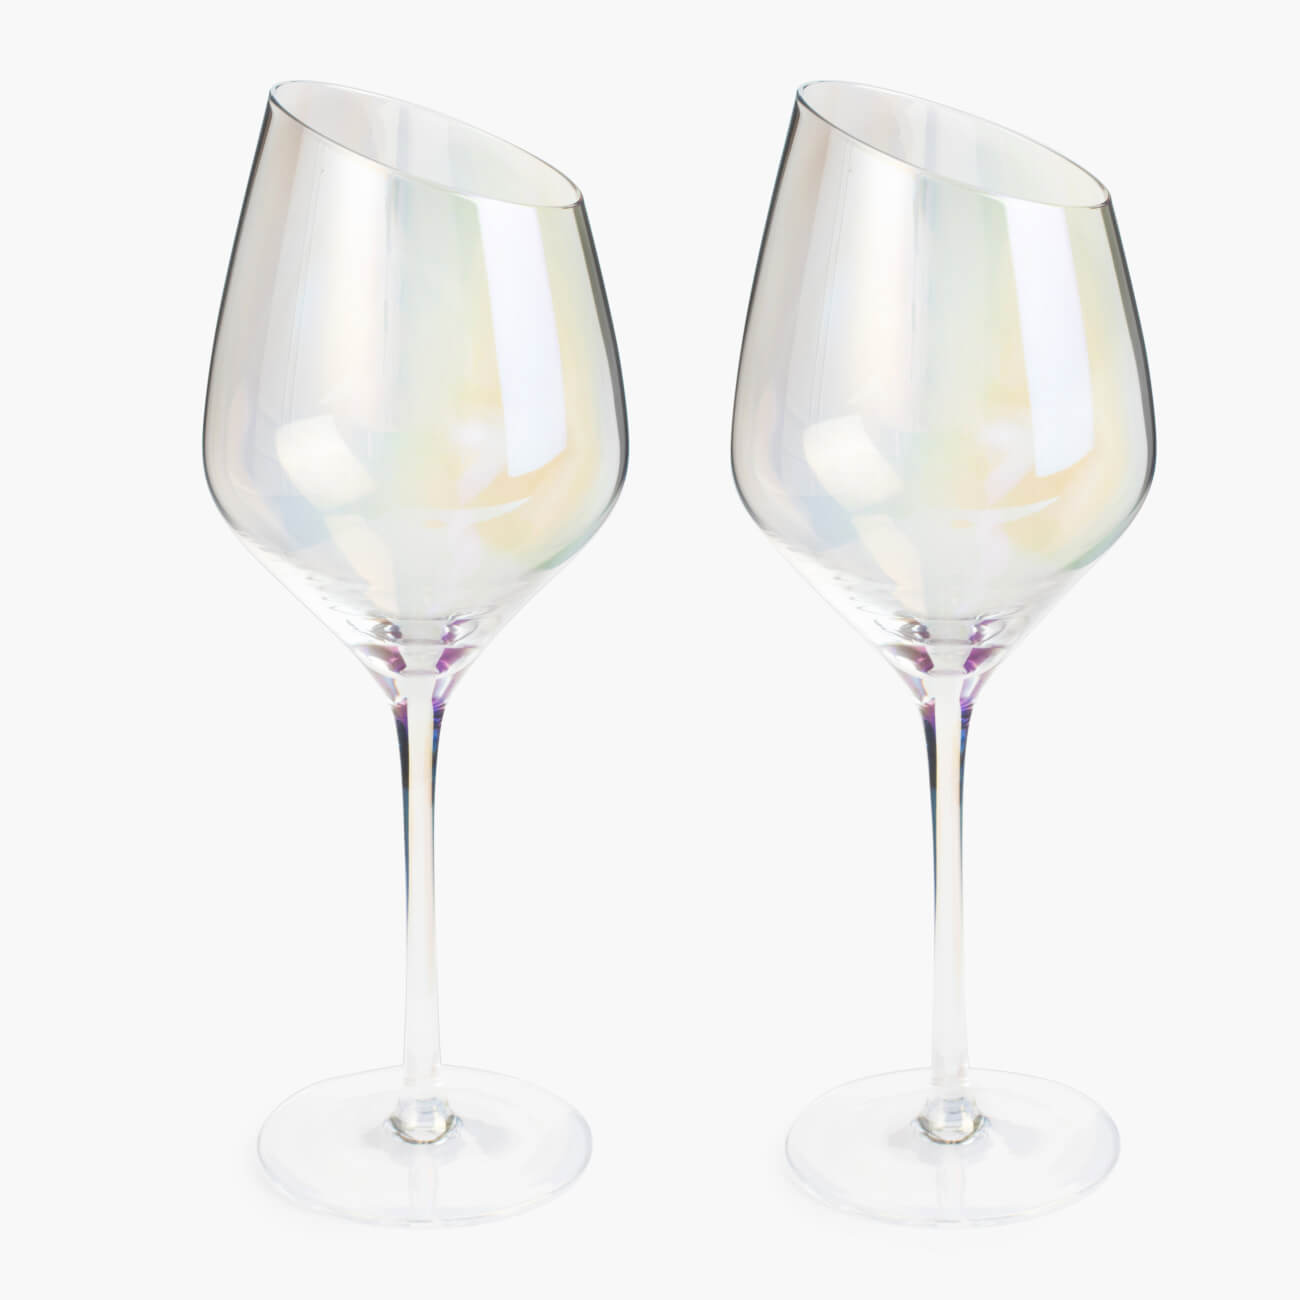 Бокал для белого вина, 460 мл, 4 шт, стекло, перламутр, Charm L polar бокал для белого вина 460 мл 6 шт стекло charm l